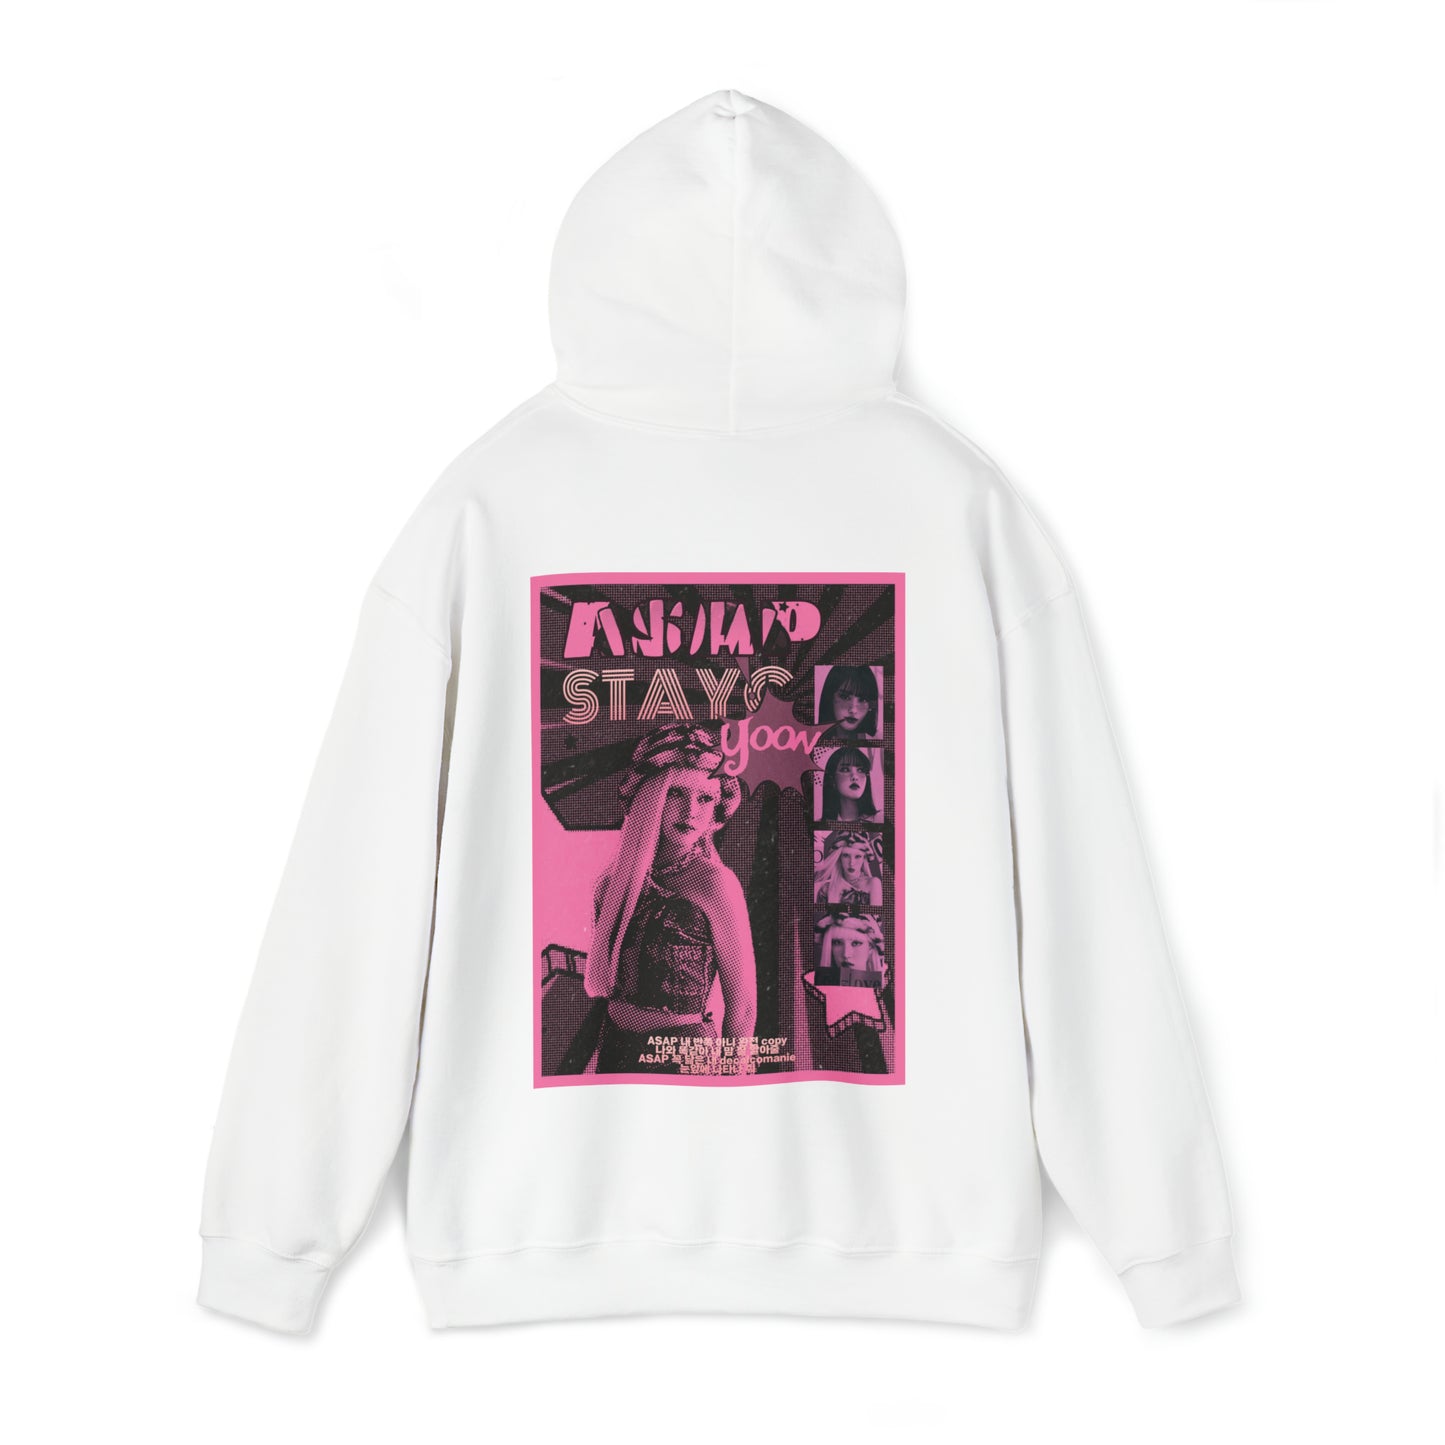 "Asap Yoon" Unisex Heavy Blend™ Hooded Sweatshirt